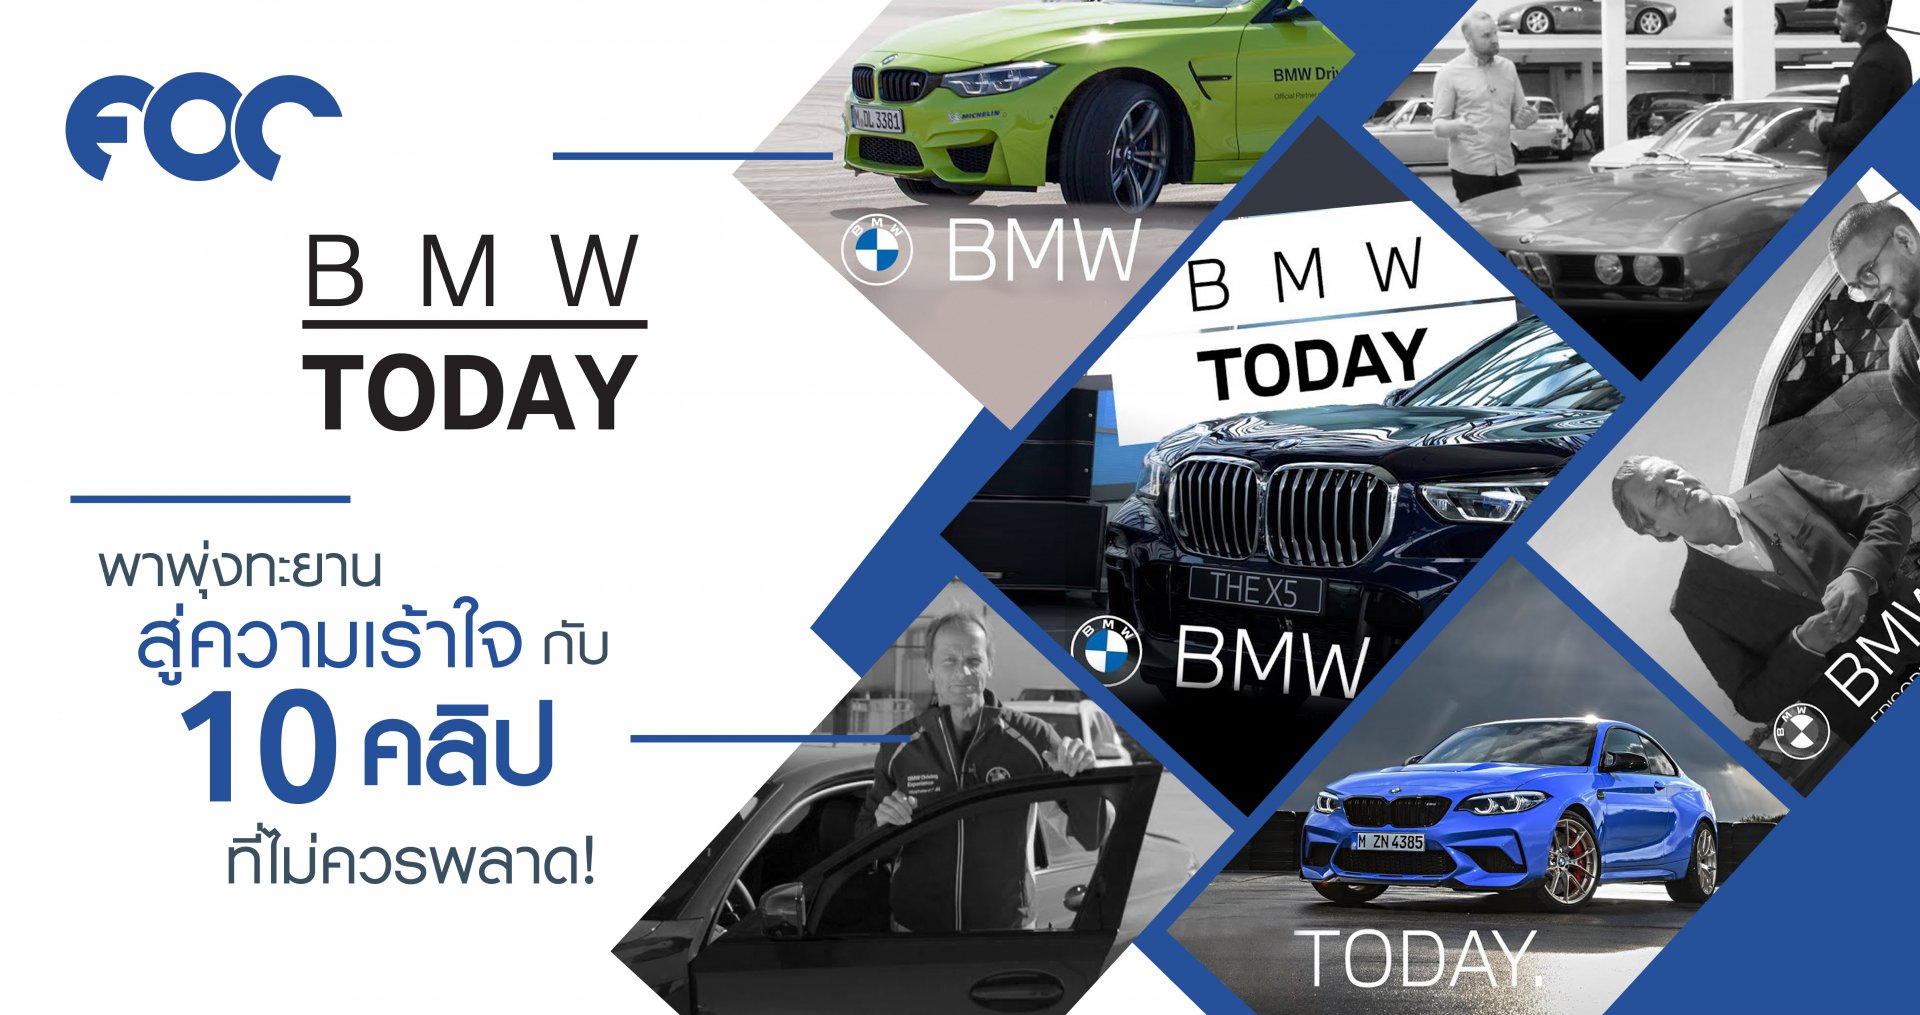 'BMW Today ' พาพุ่งทะยานสู่ความเร้าใจ กับ 10 คลิปต้องห้ามพลาด!!